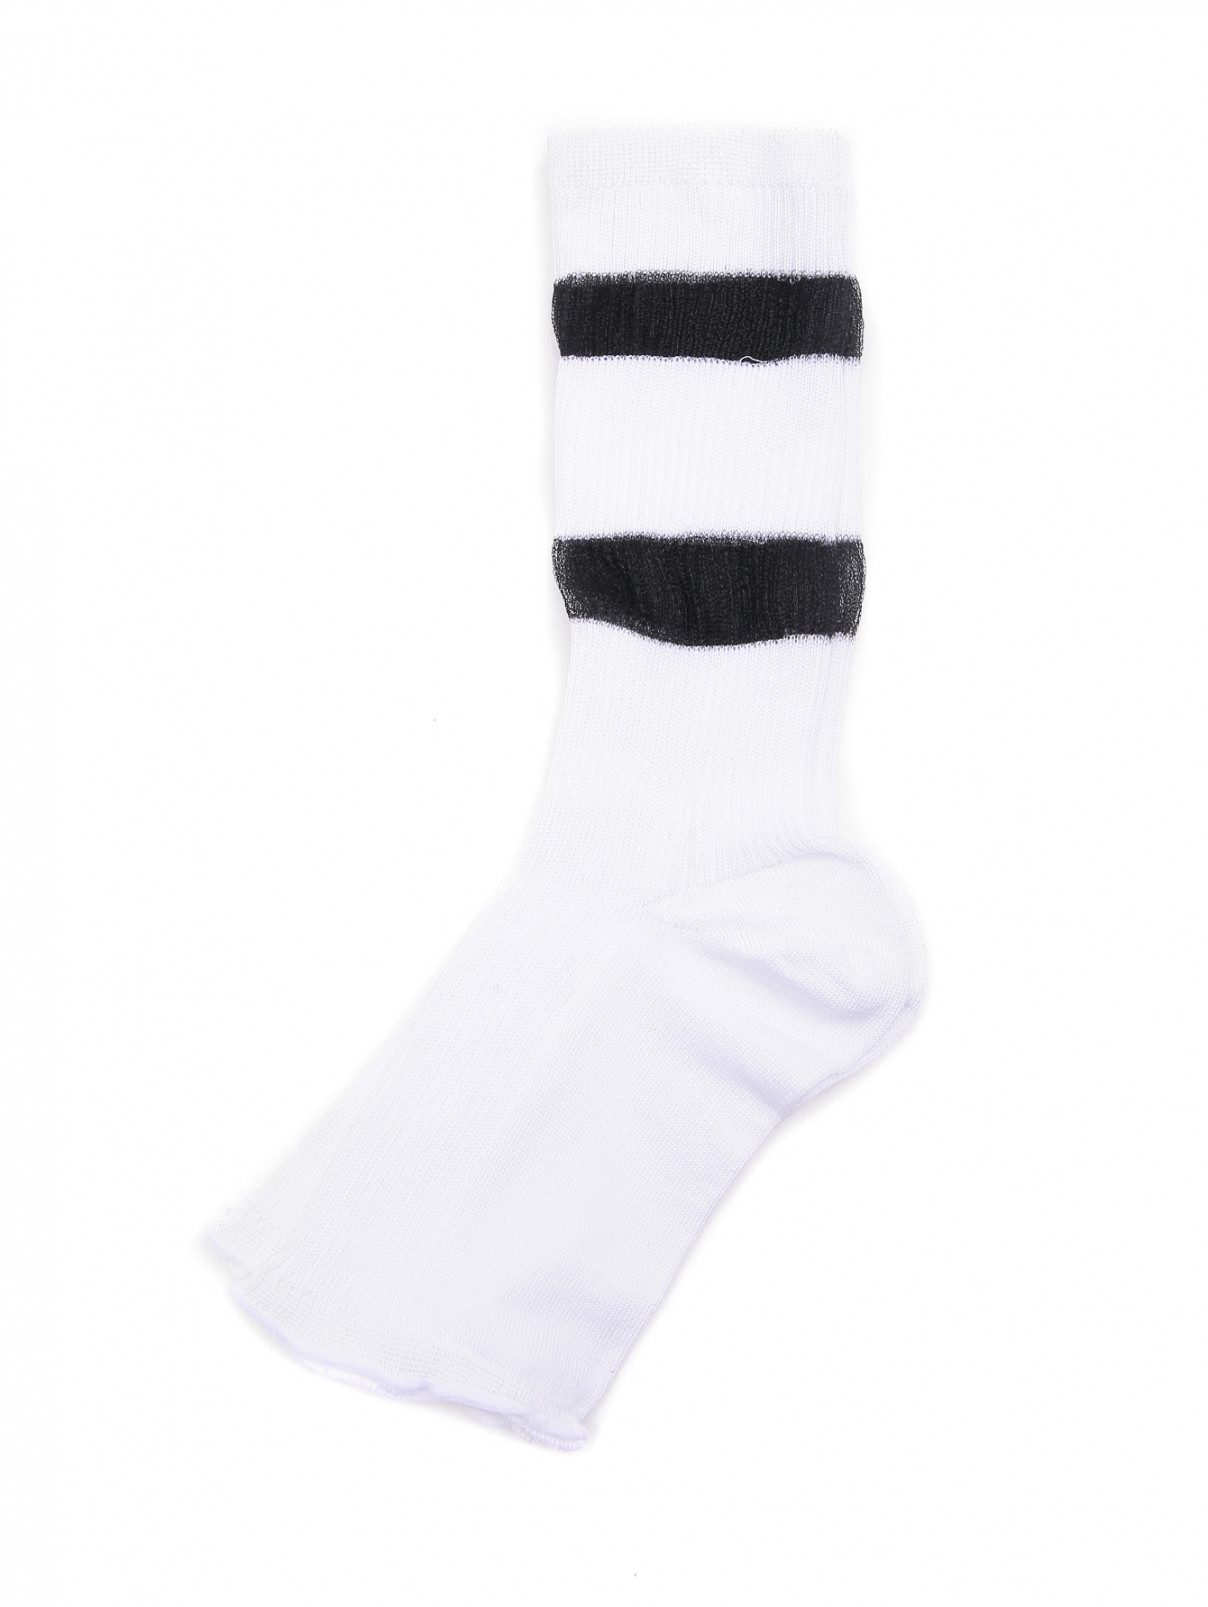 Носки из хлопка с контрастной полоской Marina Rinaldi  –  Общий вид  – Цвет:  Белый